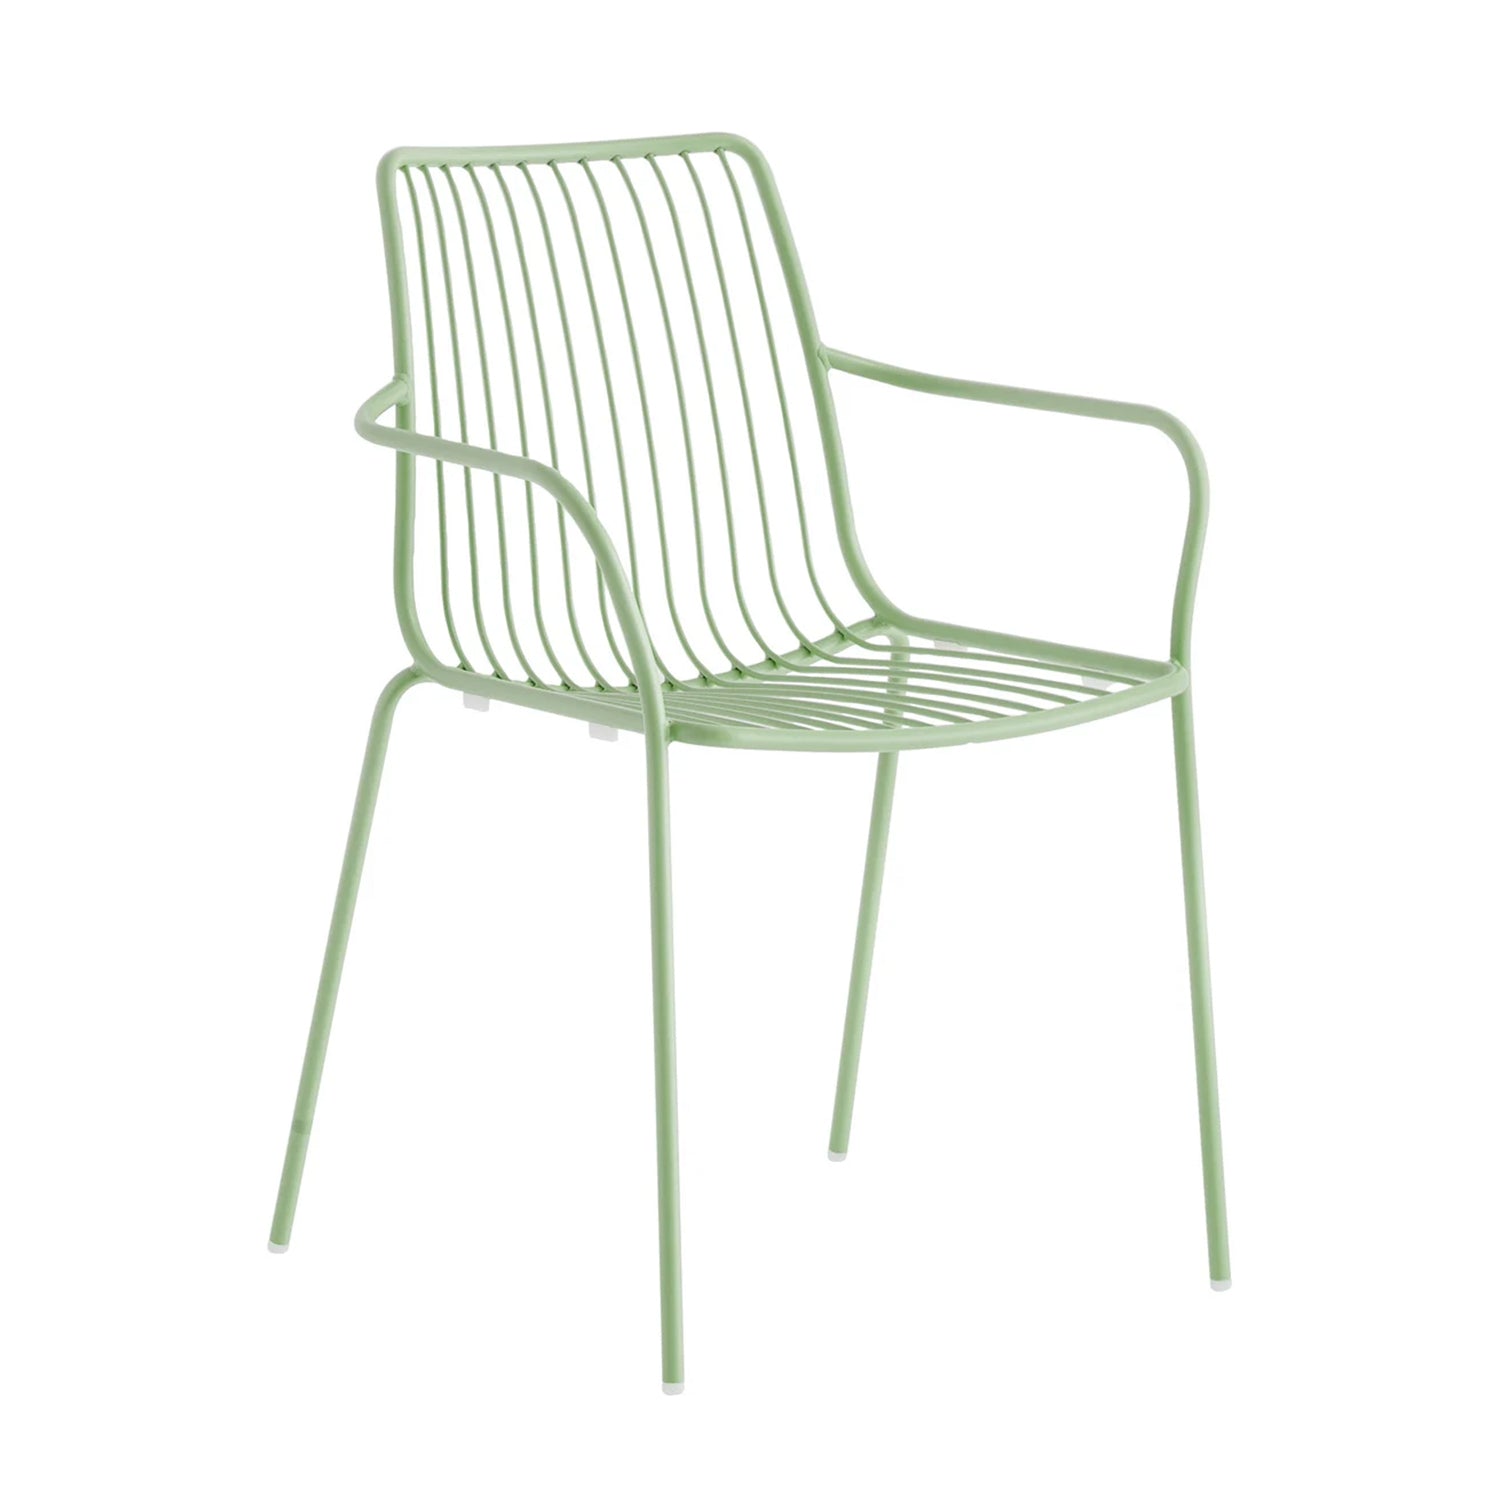 Pedrali Nolita 3656 garden dining armchair in sage green